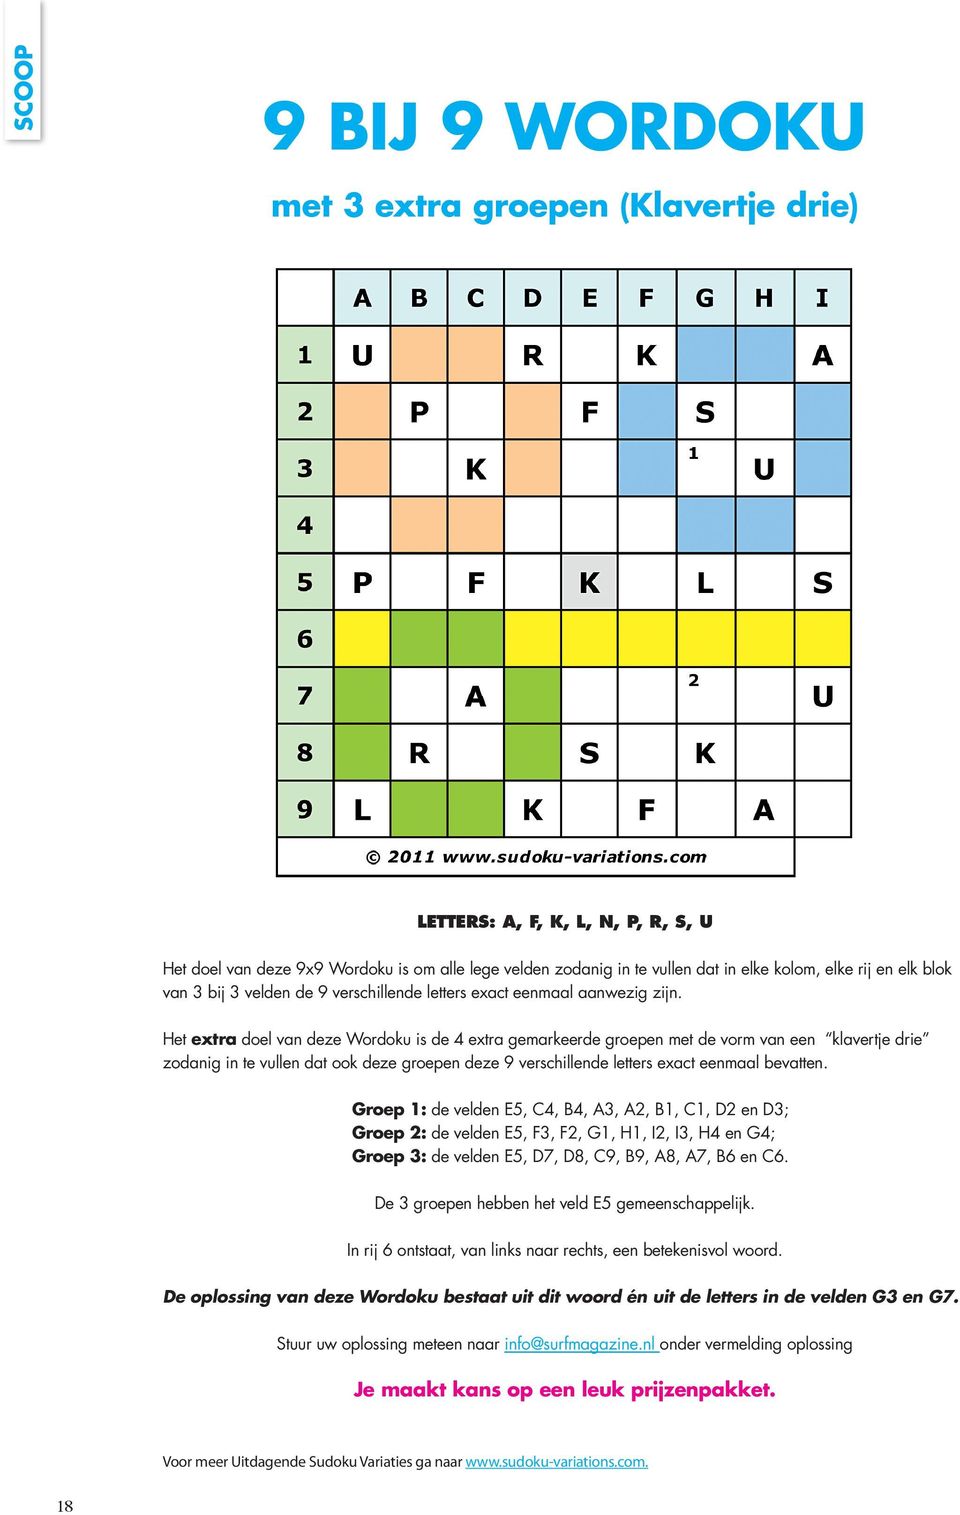 Het extra doel van deze Wordoku is de 4 extra gemarkeerde groepen met de vorm van een klavertje drie zodanig in te vullen dat ook deze groepen deze 9 verschillende letters exact eenmaal bevatten.